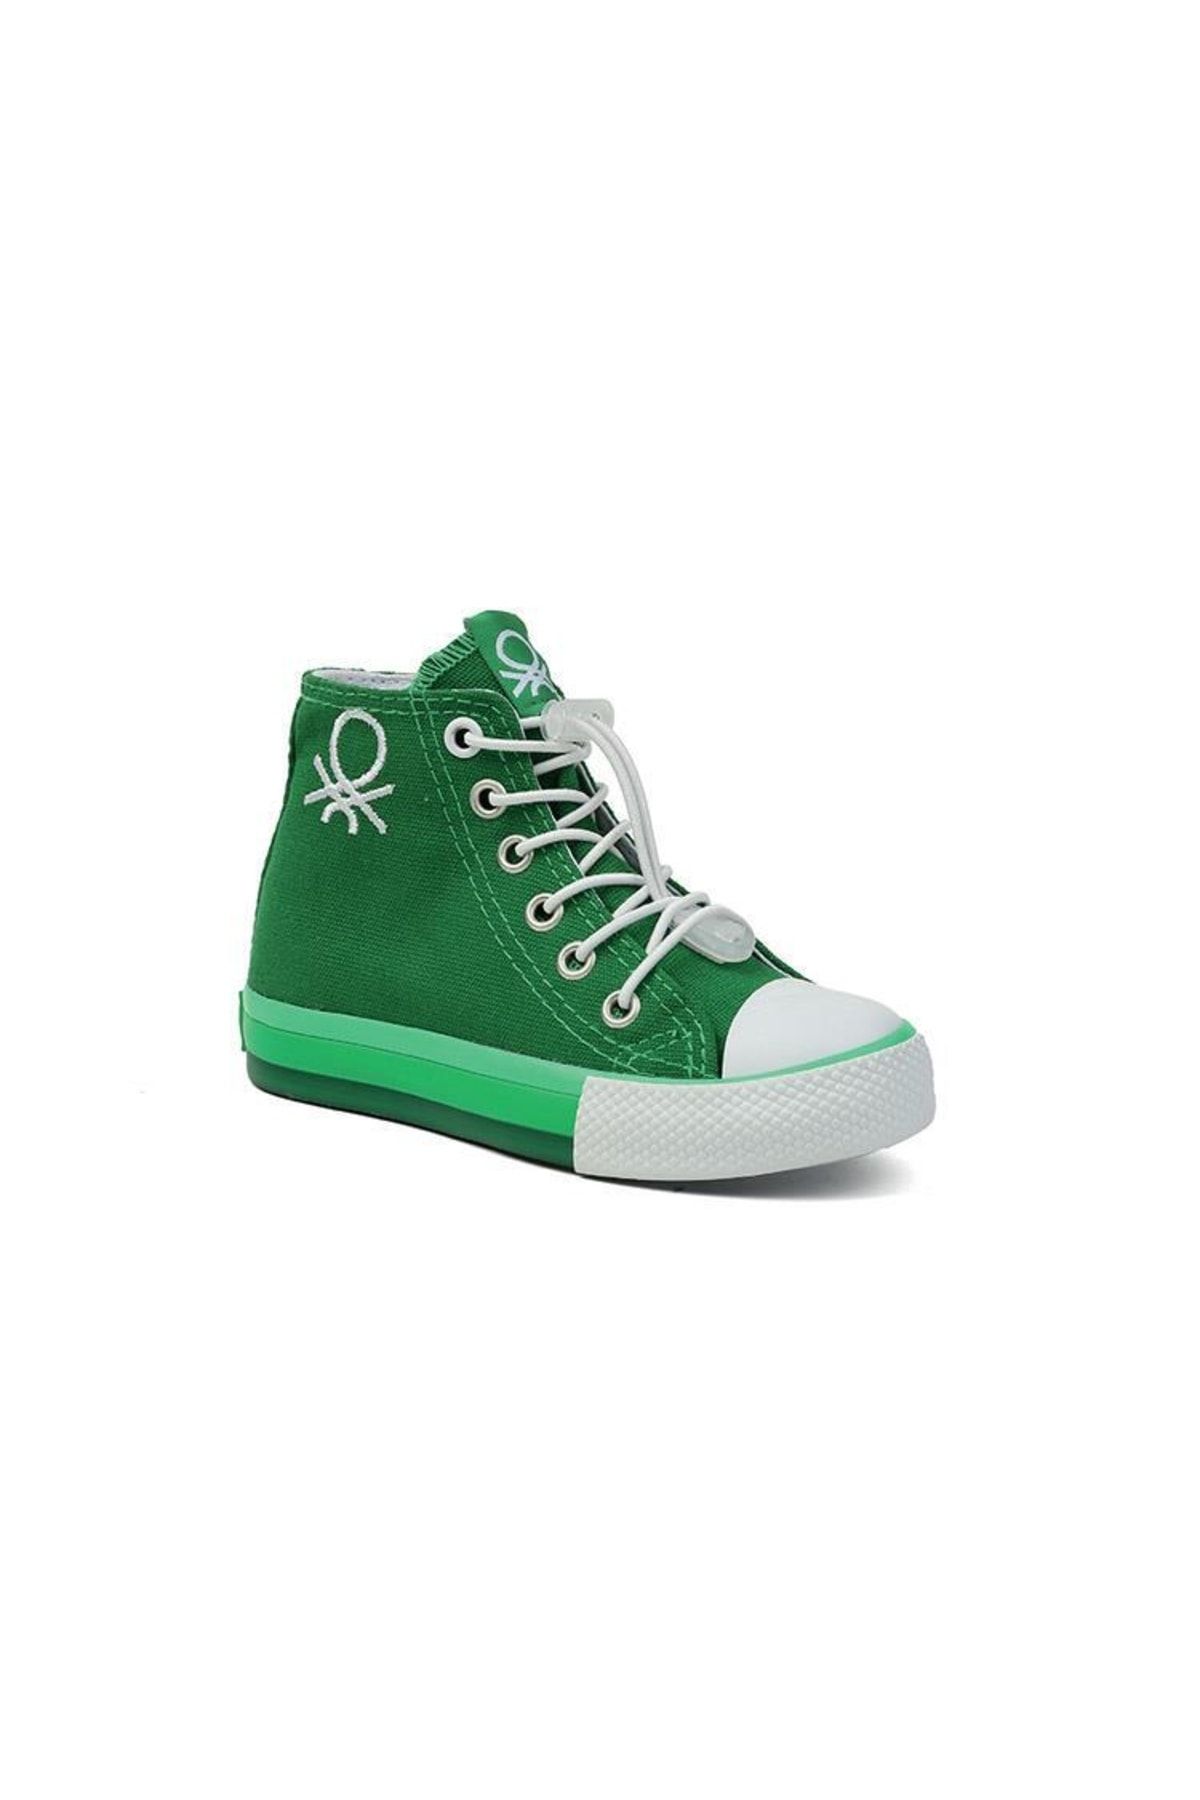 Benetton Yeşil Çocuk Spor Ayakkabı